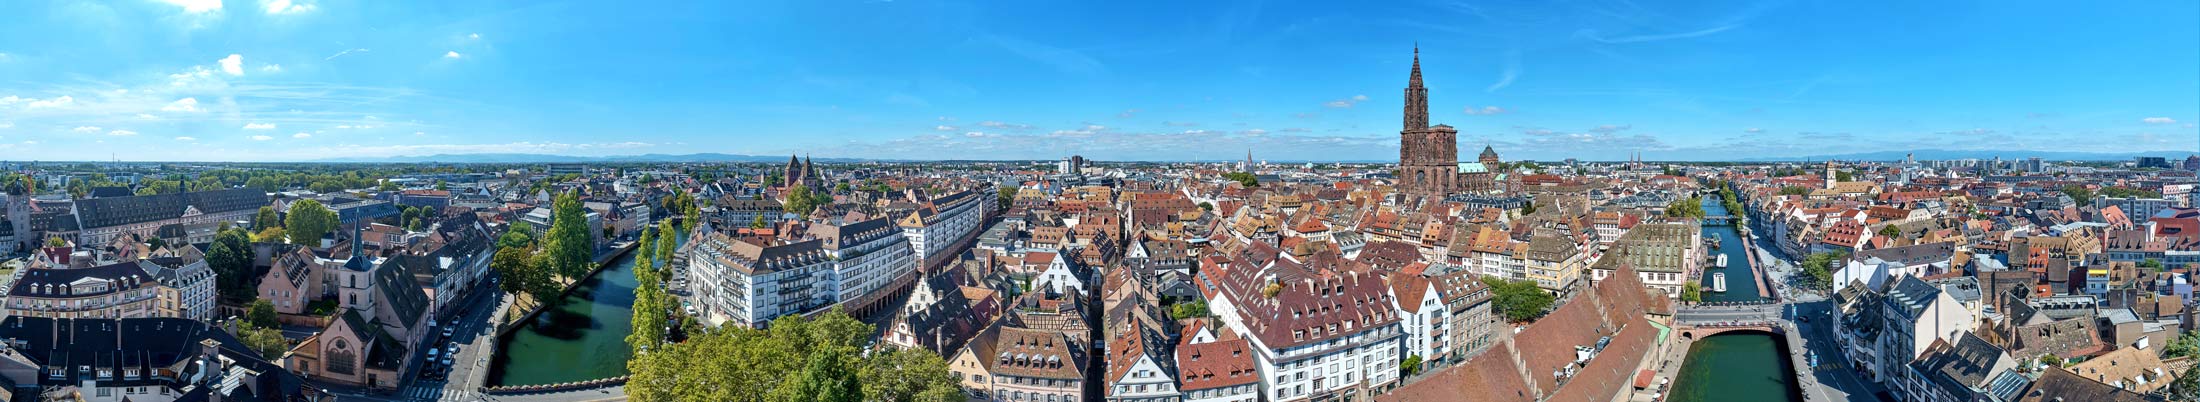 Panoramique réalisé par drone de Strasbourg avec la Cathédrale Notre-Dame